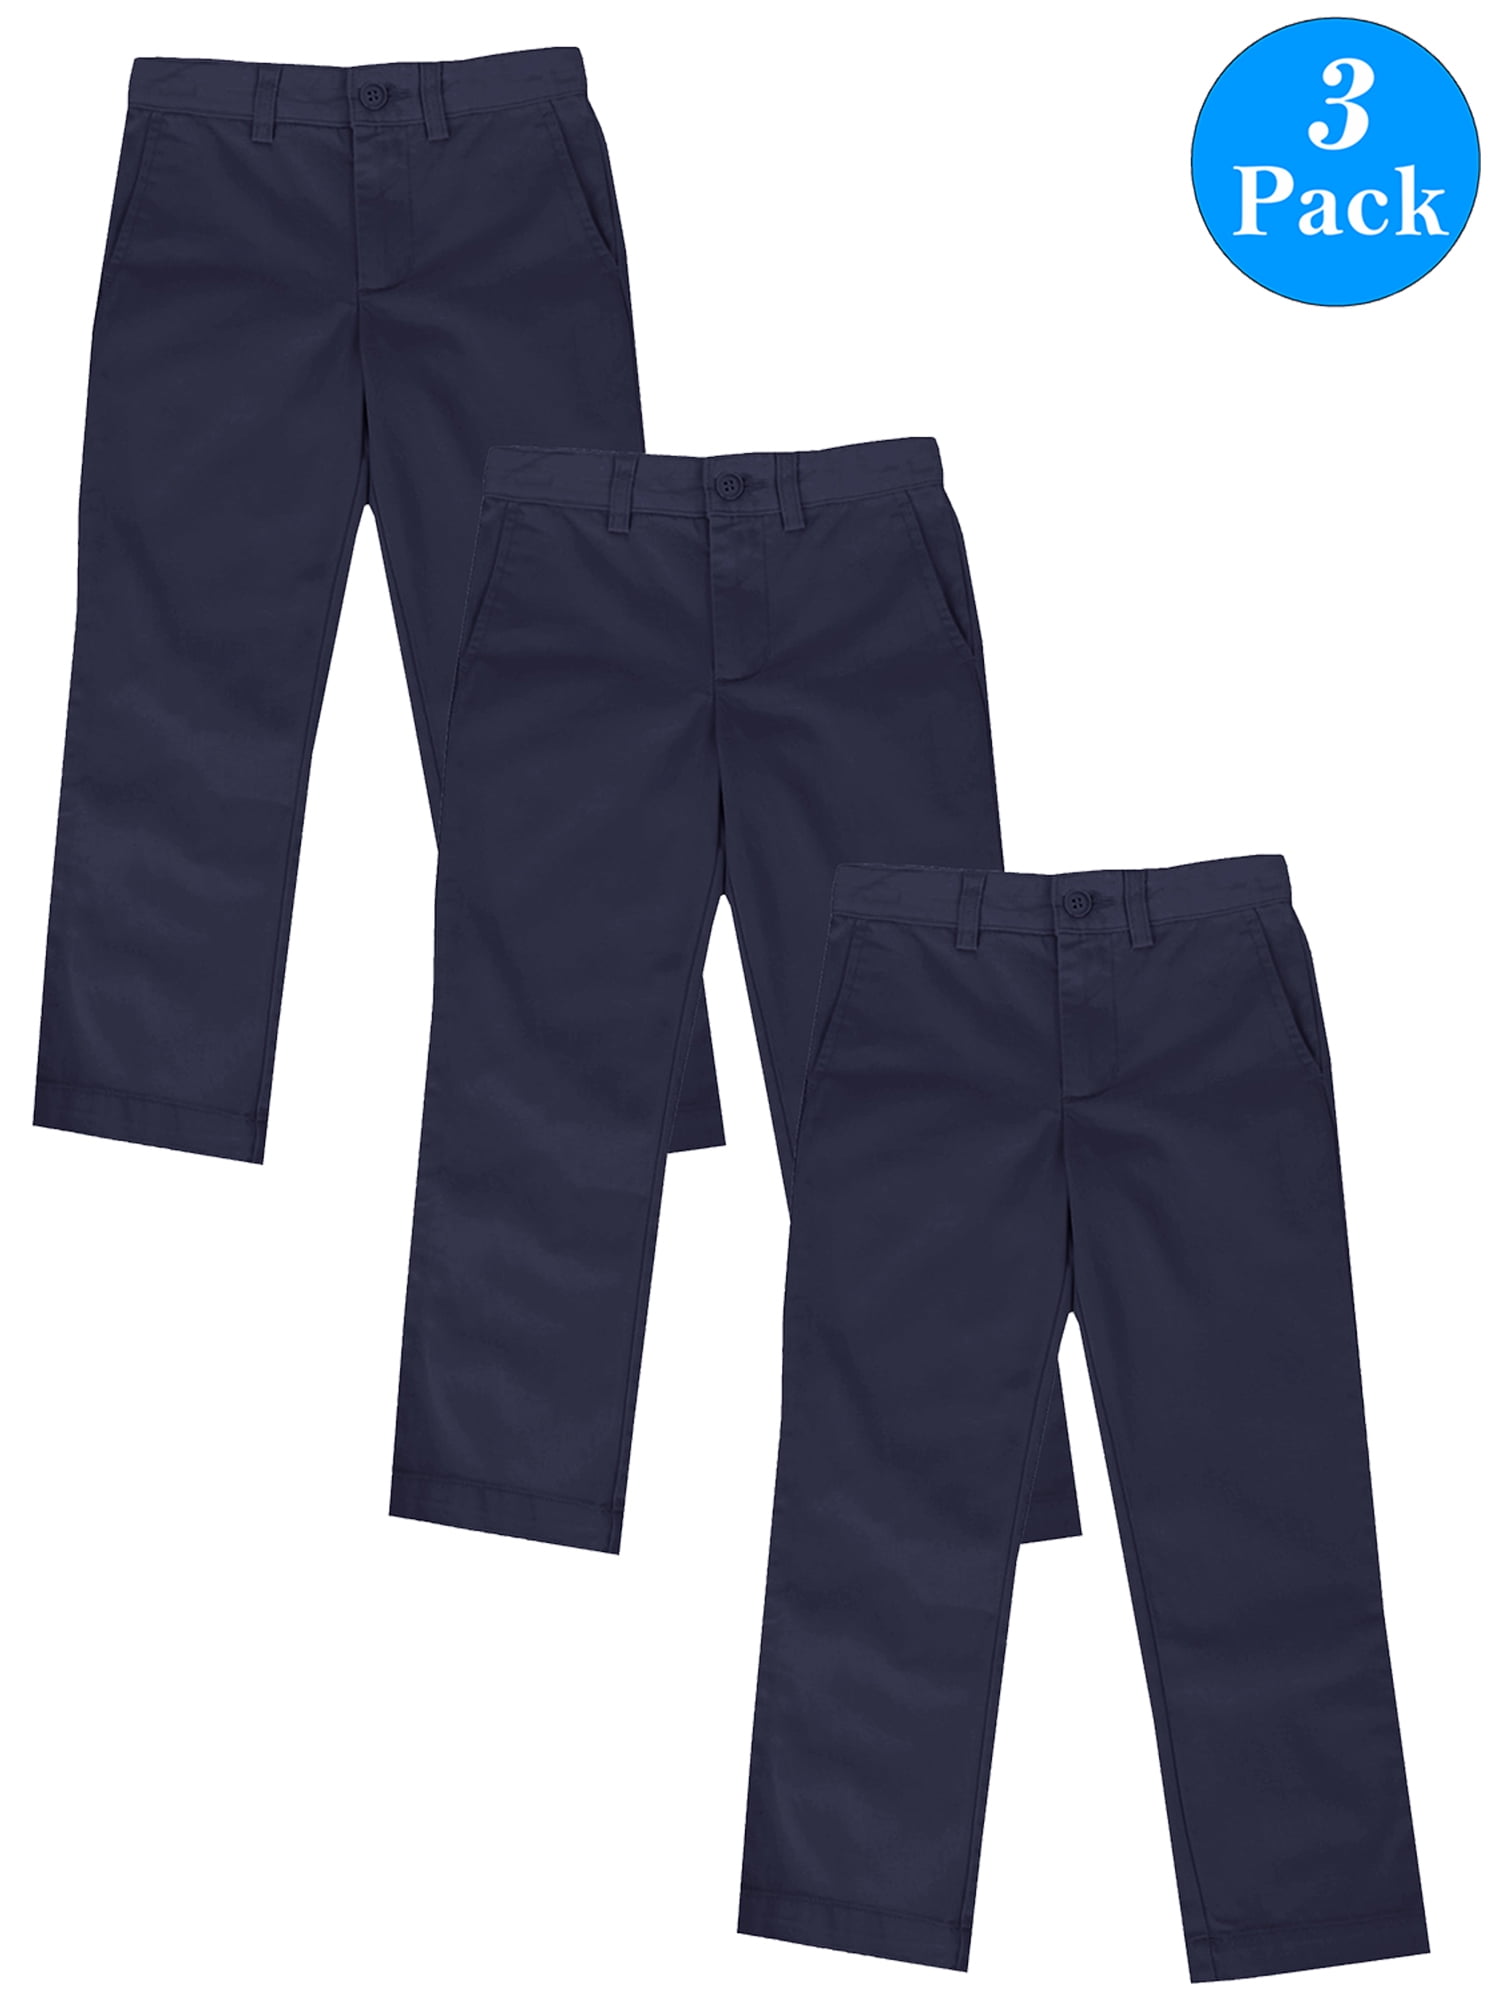 Wholesale Boys' Flat Front Uniform Pants, Khaki, Size 8 - DollarDays